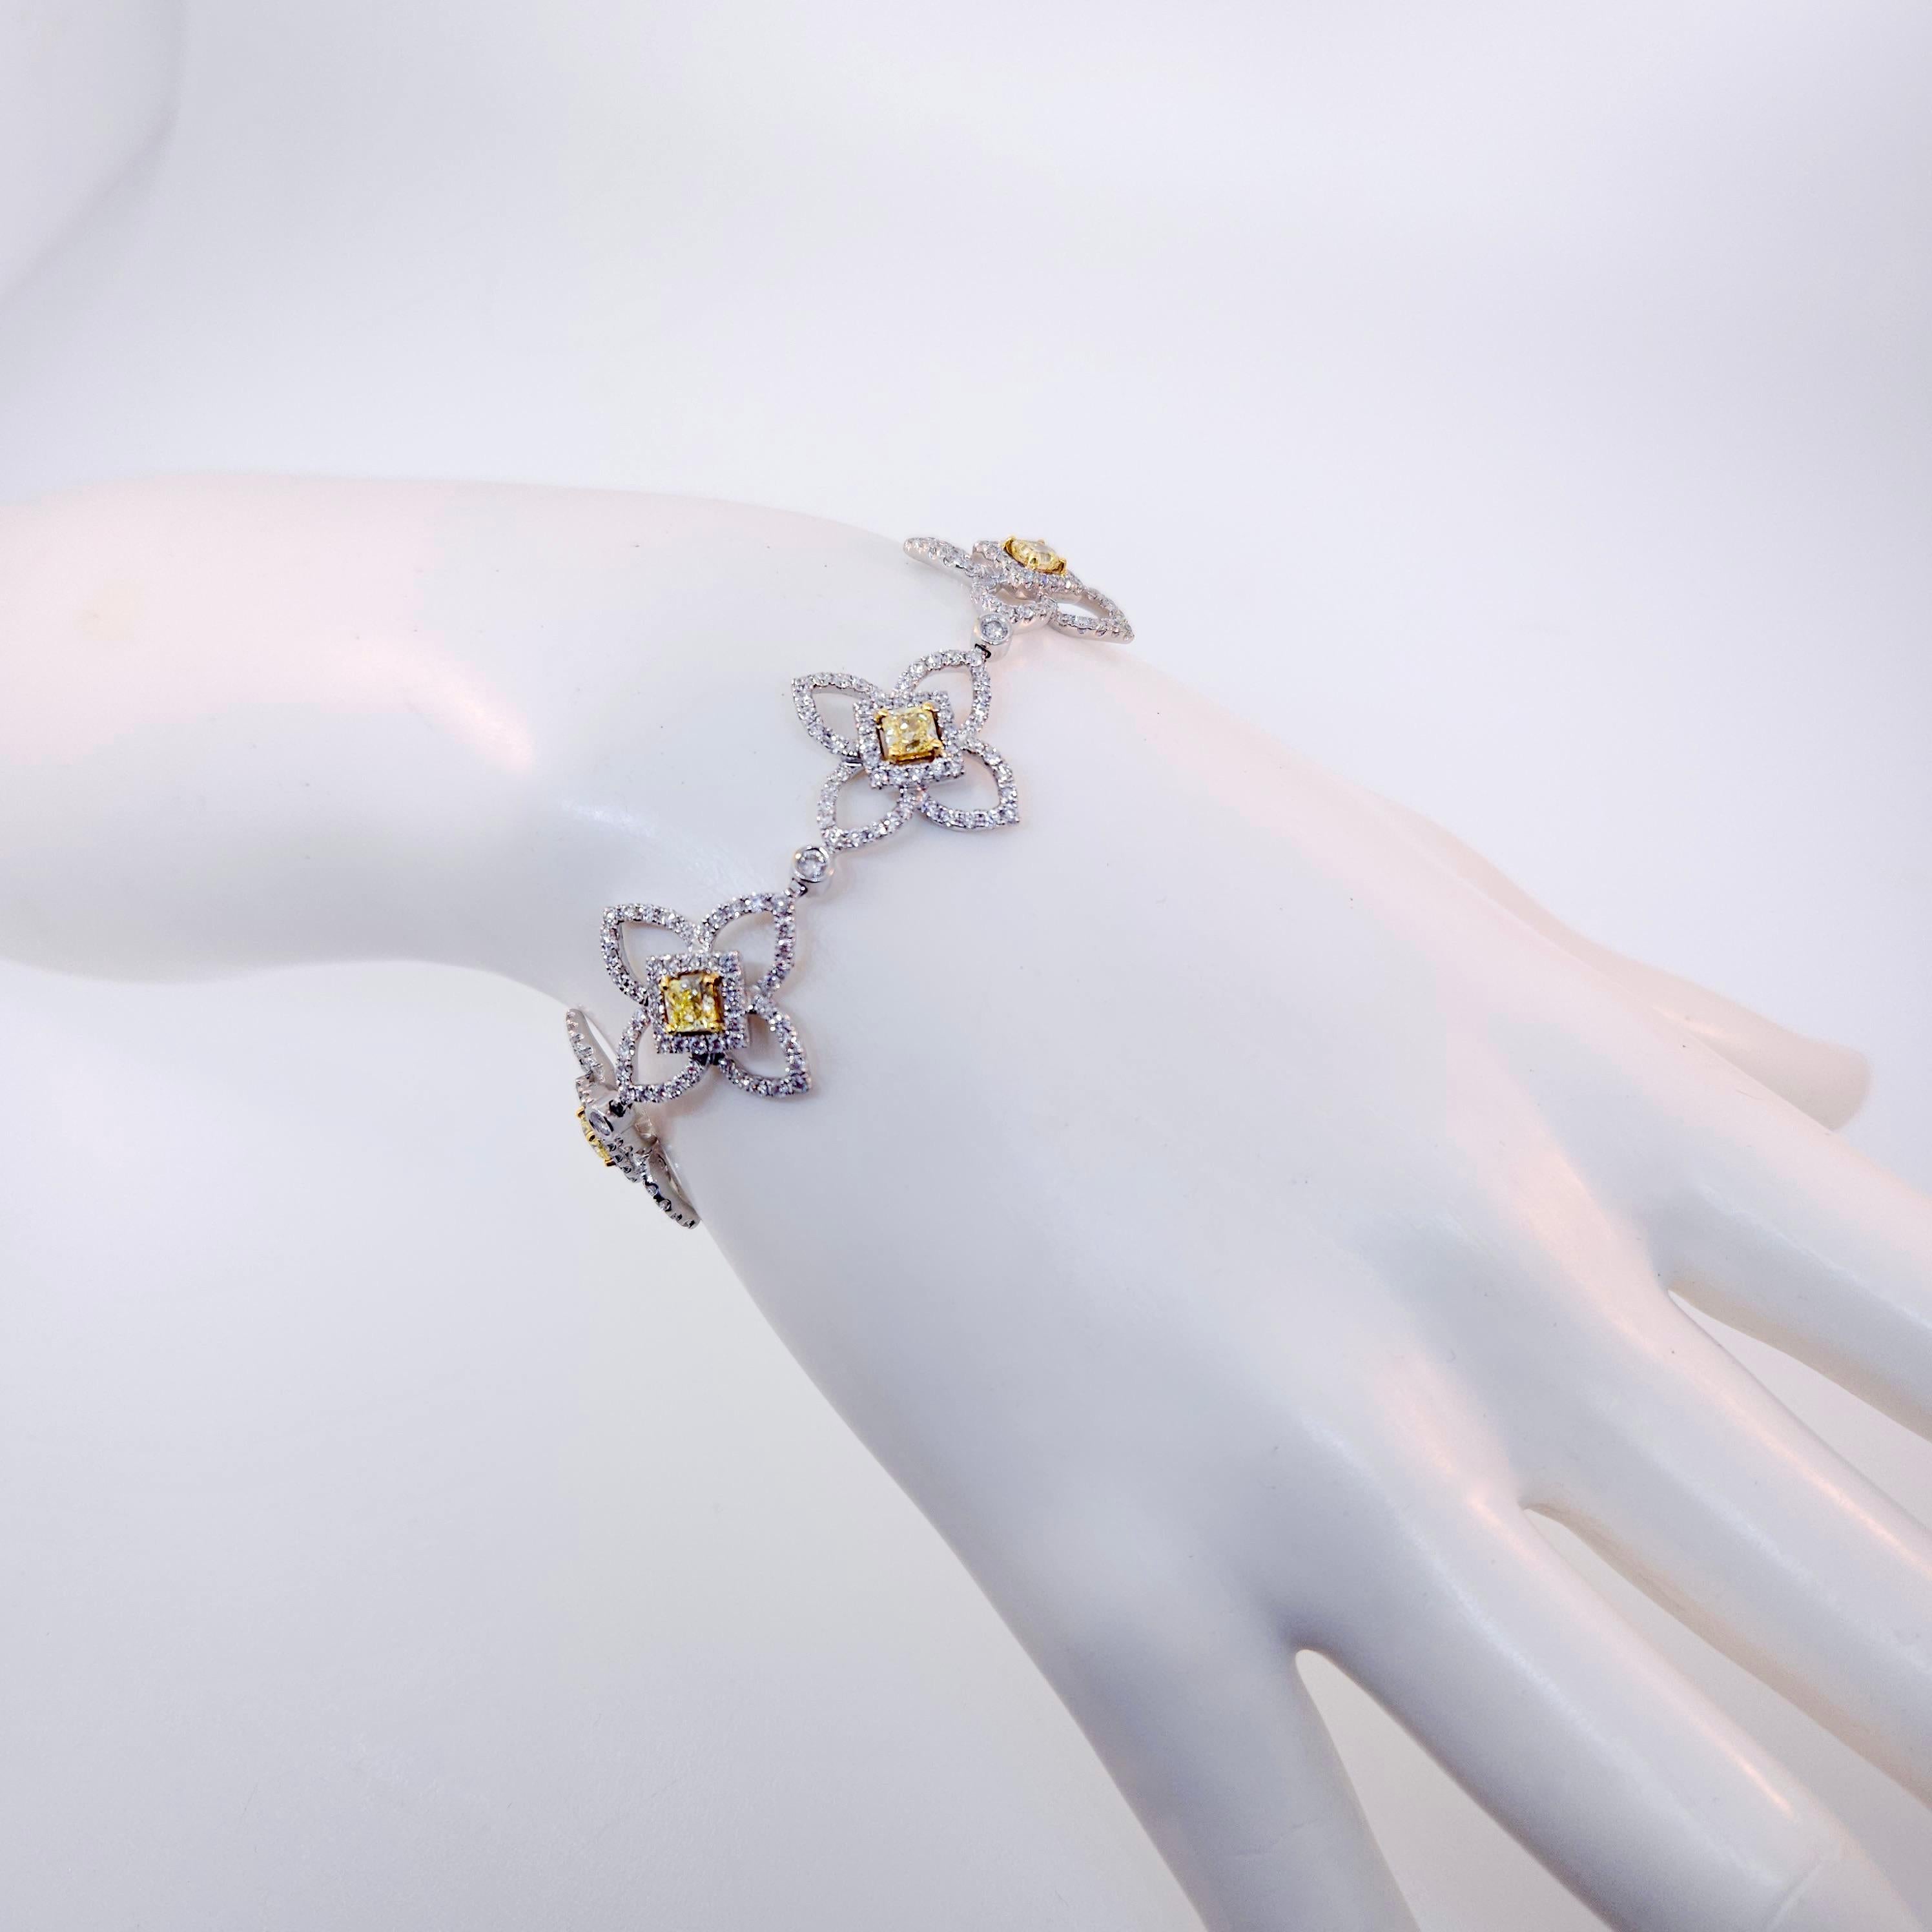 Vielen Dank, dass Sie sich dieses schöne Diamantarmband aus 18 Karat Weißgold von Luca ansehen.  Der Armreif enthält Diamanten mit einem Gesamtgewicht von 7,16 Karat.  Es gibt 7 fancy yellow color radiant cut Diamanten, die im Durchschnitt 3,3 bis